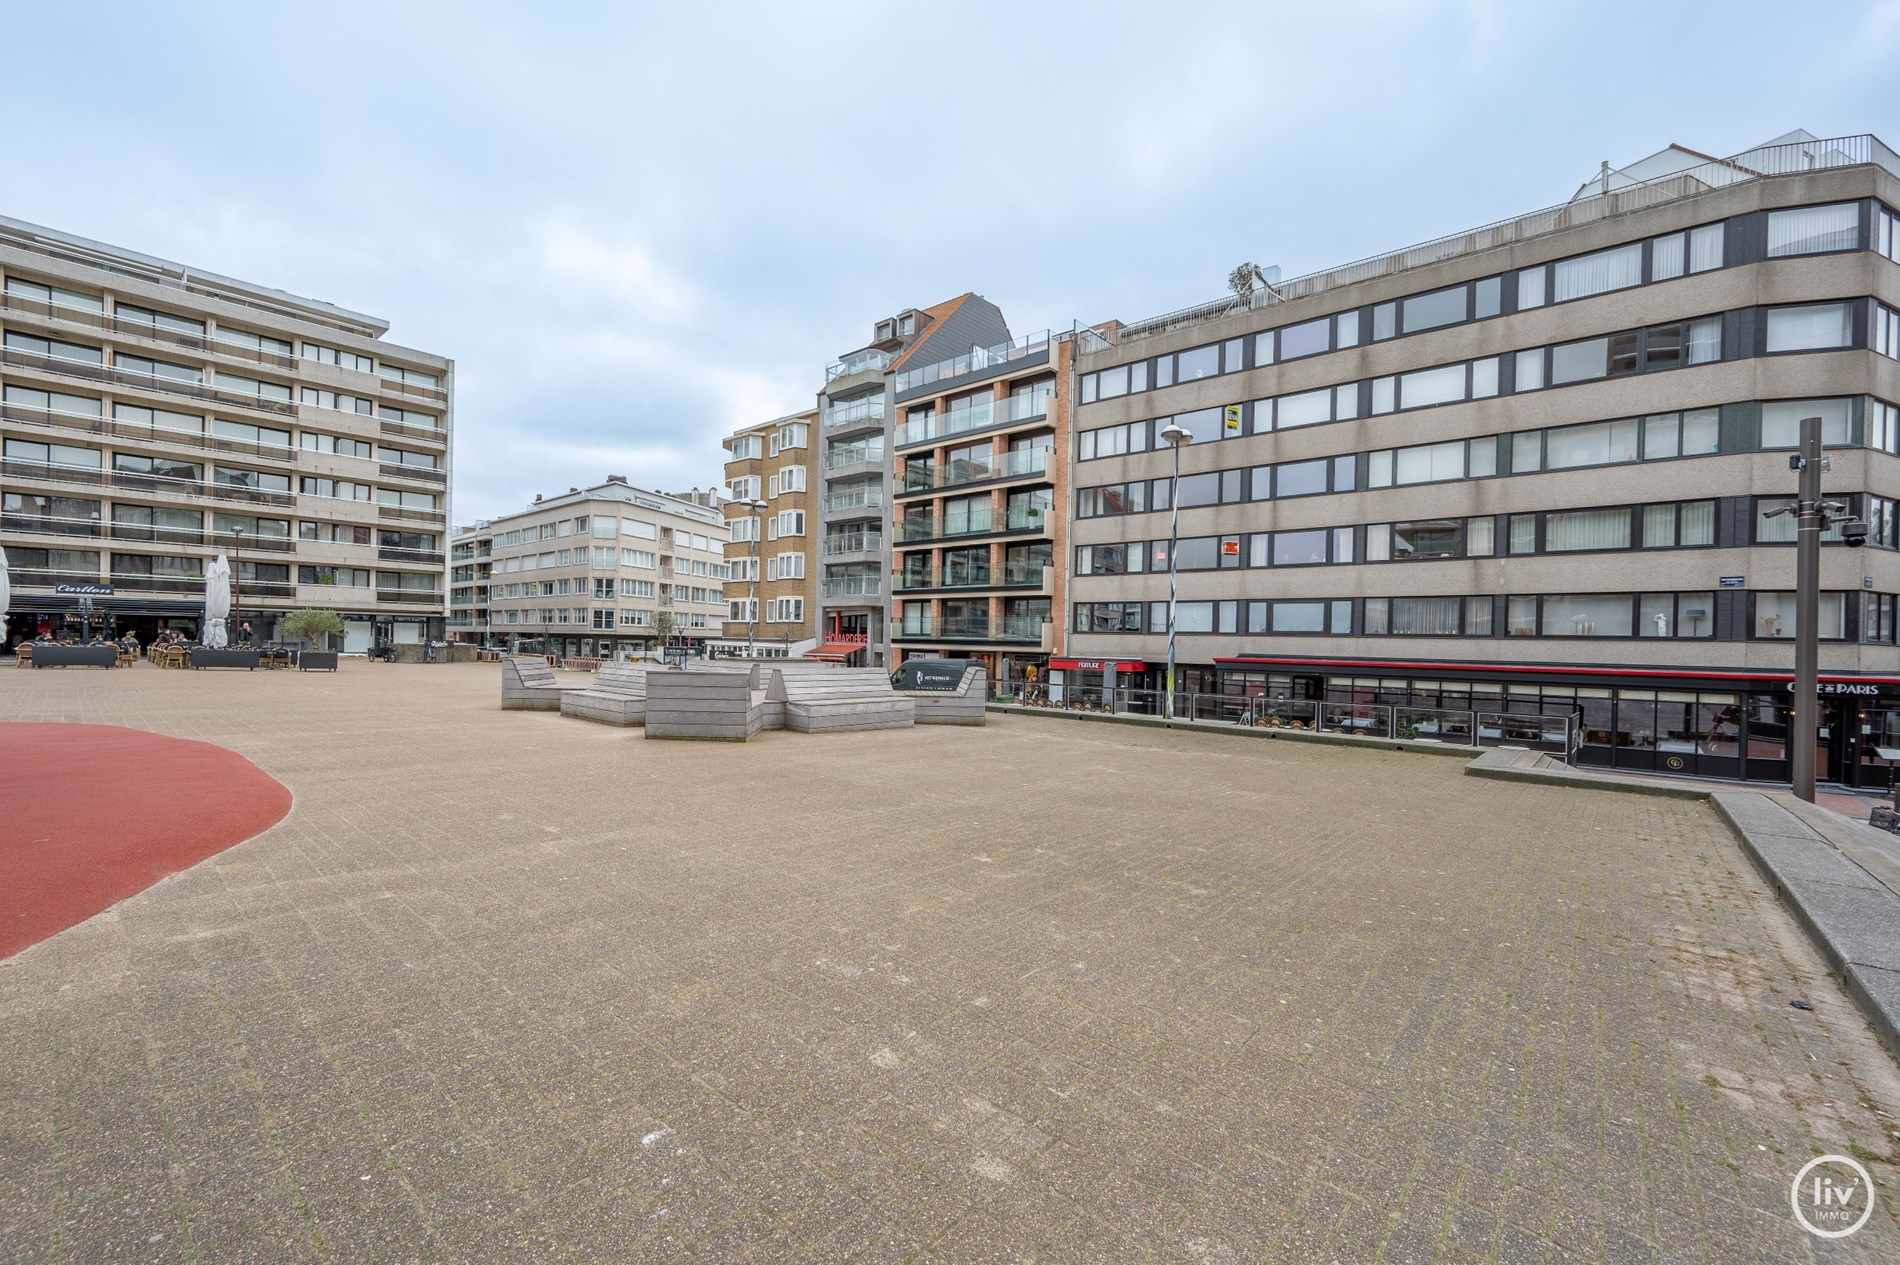 Agr&#233;able appartement de 2 chambres avec vue frontale sur la MER situ&#233; sur la place Vanbunnen &#224; Knokke. 